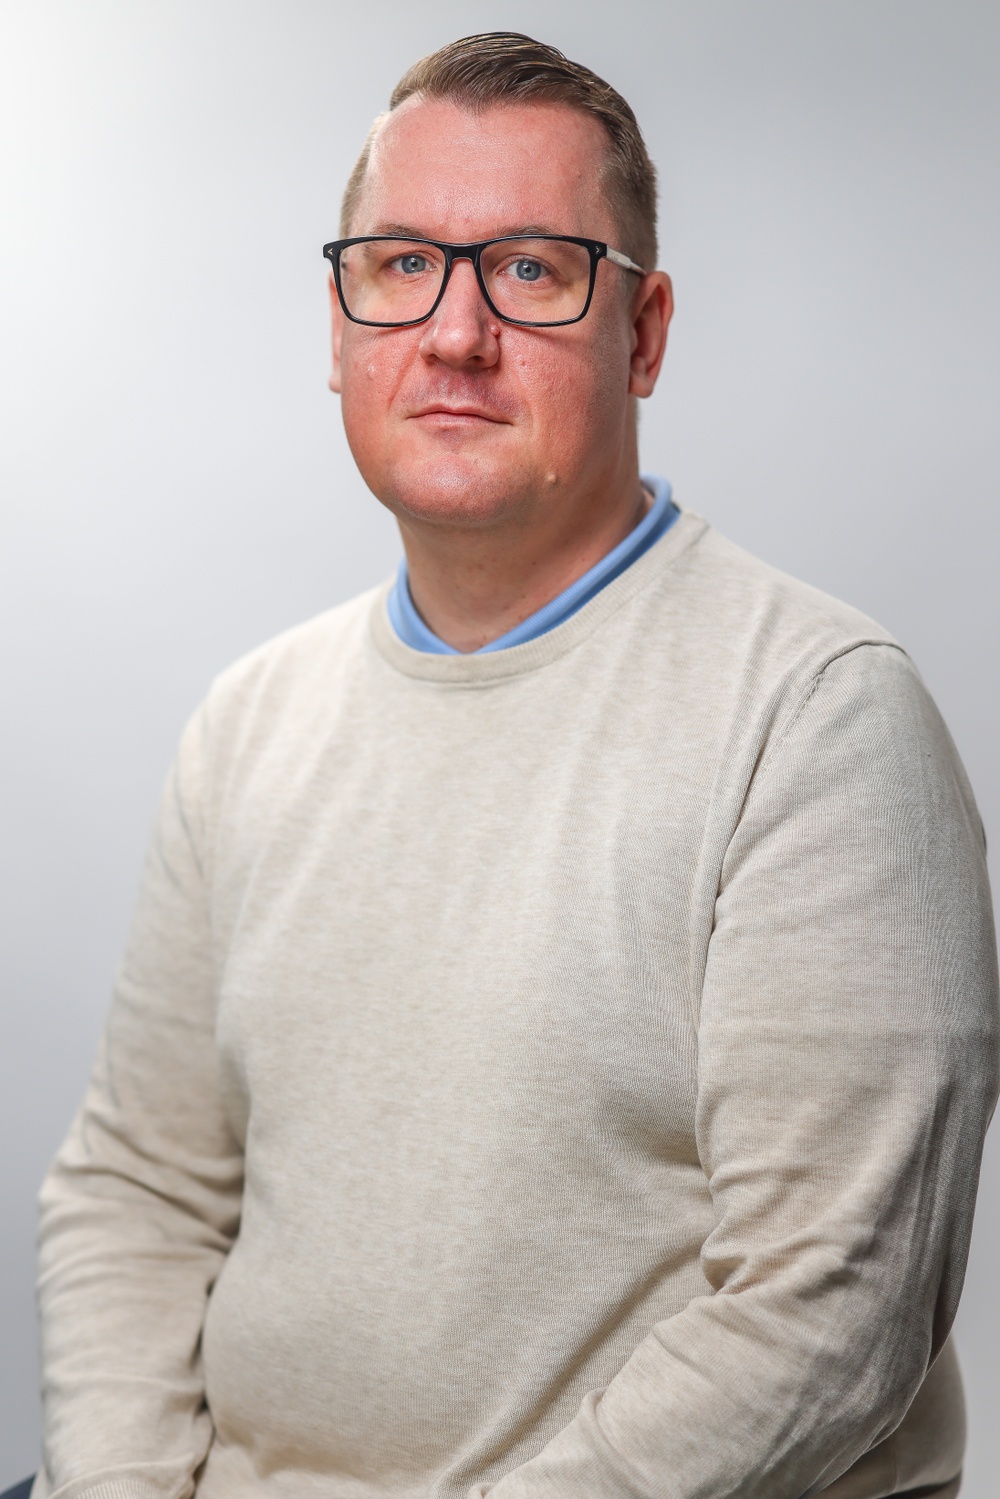 Daniel Hamrén är enhetschef för Bredband och ft. enhetschef för Elnät på det kommunala bolaget Lidköping miljö och teknik AB